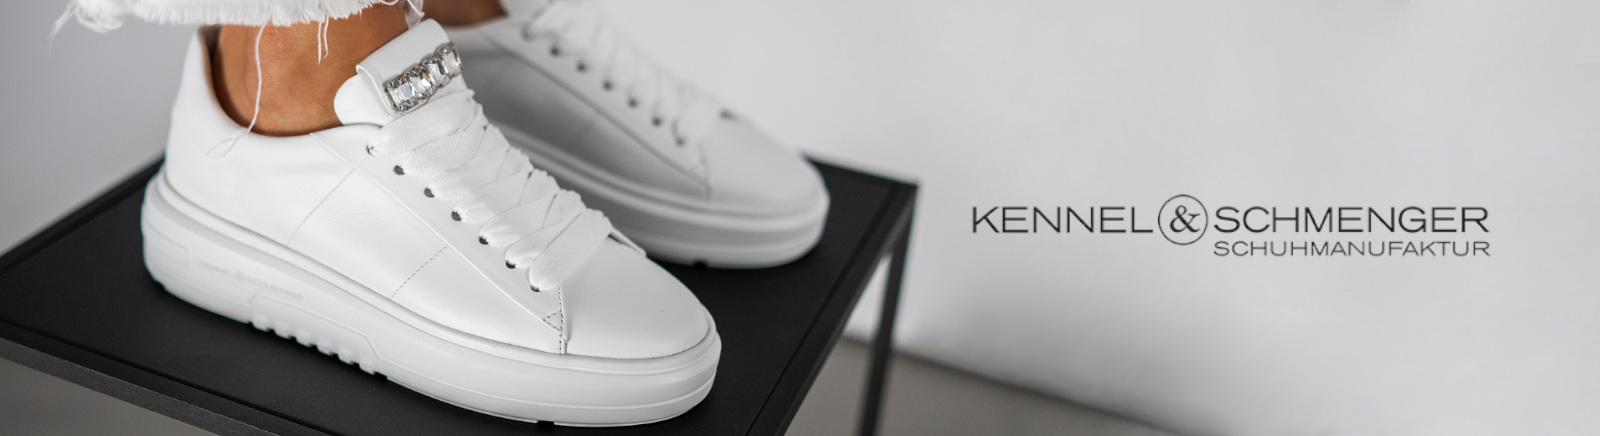 Kennel & Schmenger Schuhe kaufen &#9654; stilsichere Looks | GISY